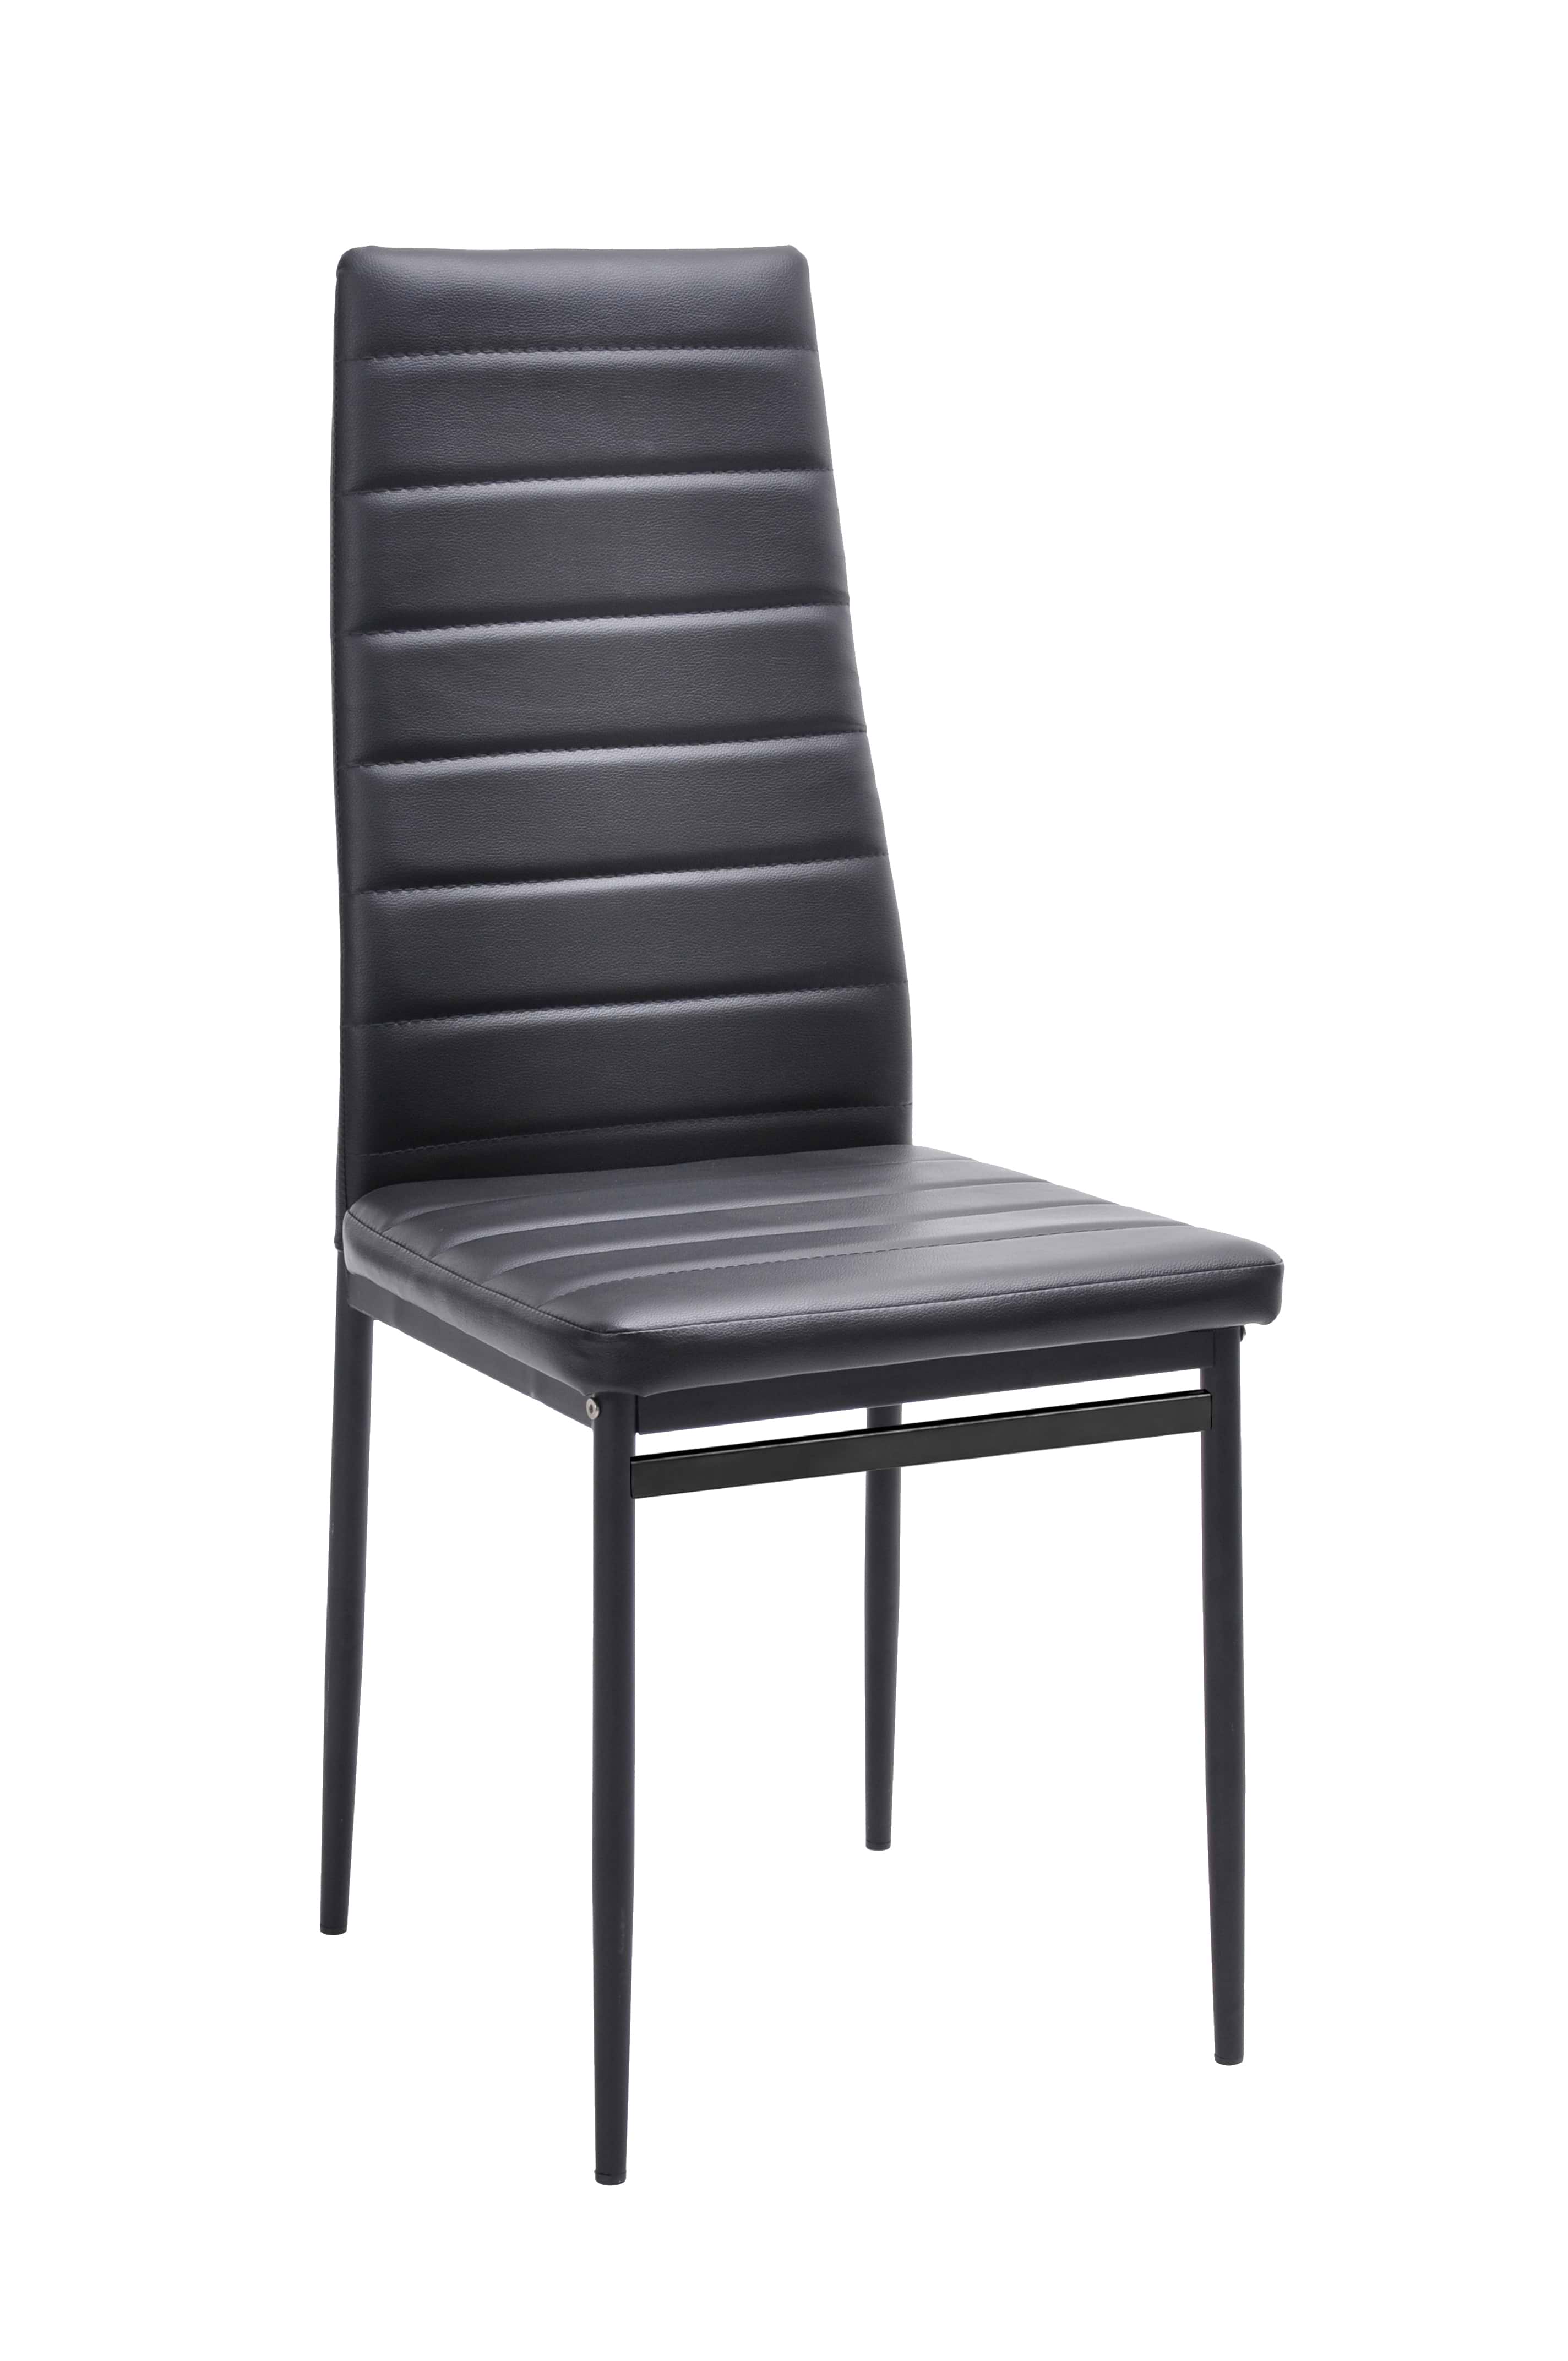 פינת אוכל עם 6 כיסאות דגם וונציה צבע שחור HOMAX